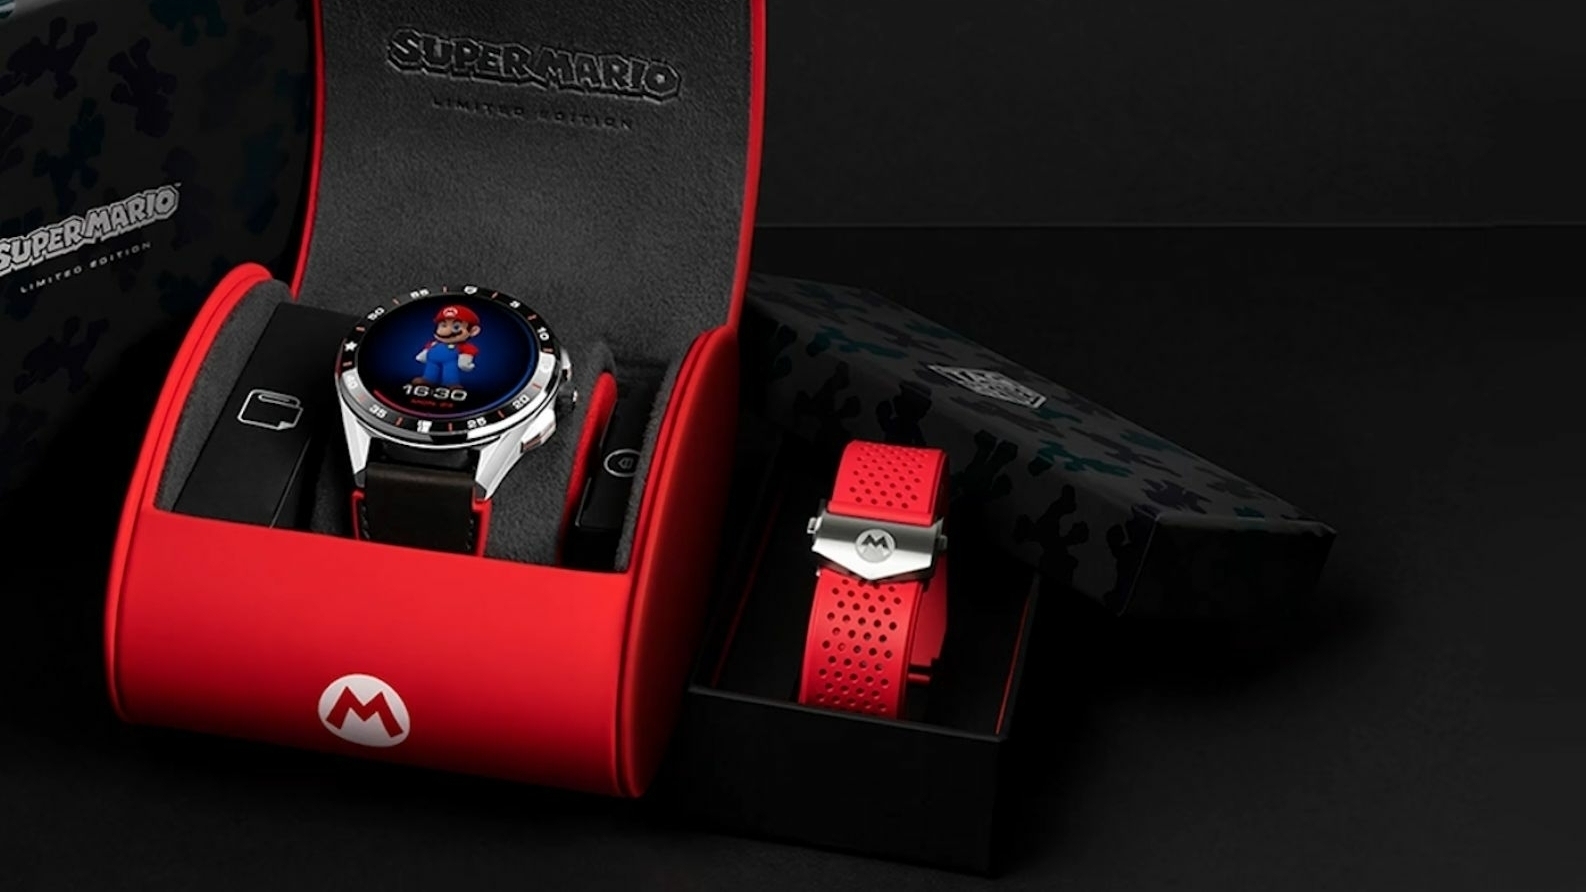 TAG Heuer verkauft Mario-Smartwatch für 2150 US-Dollar | heise online